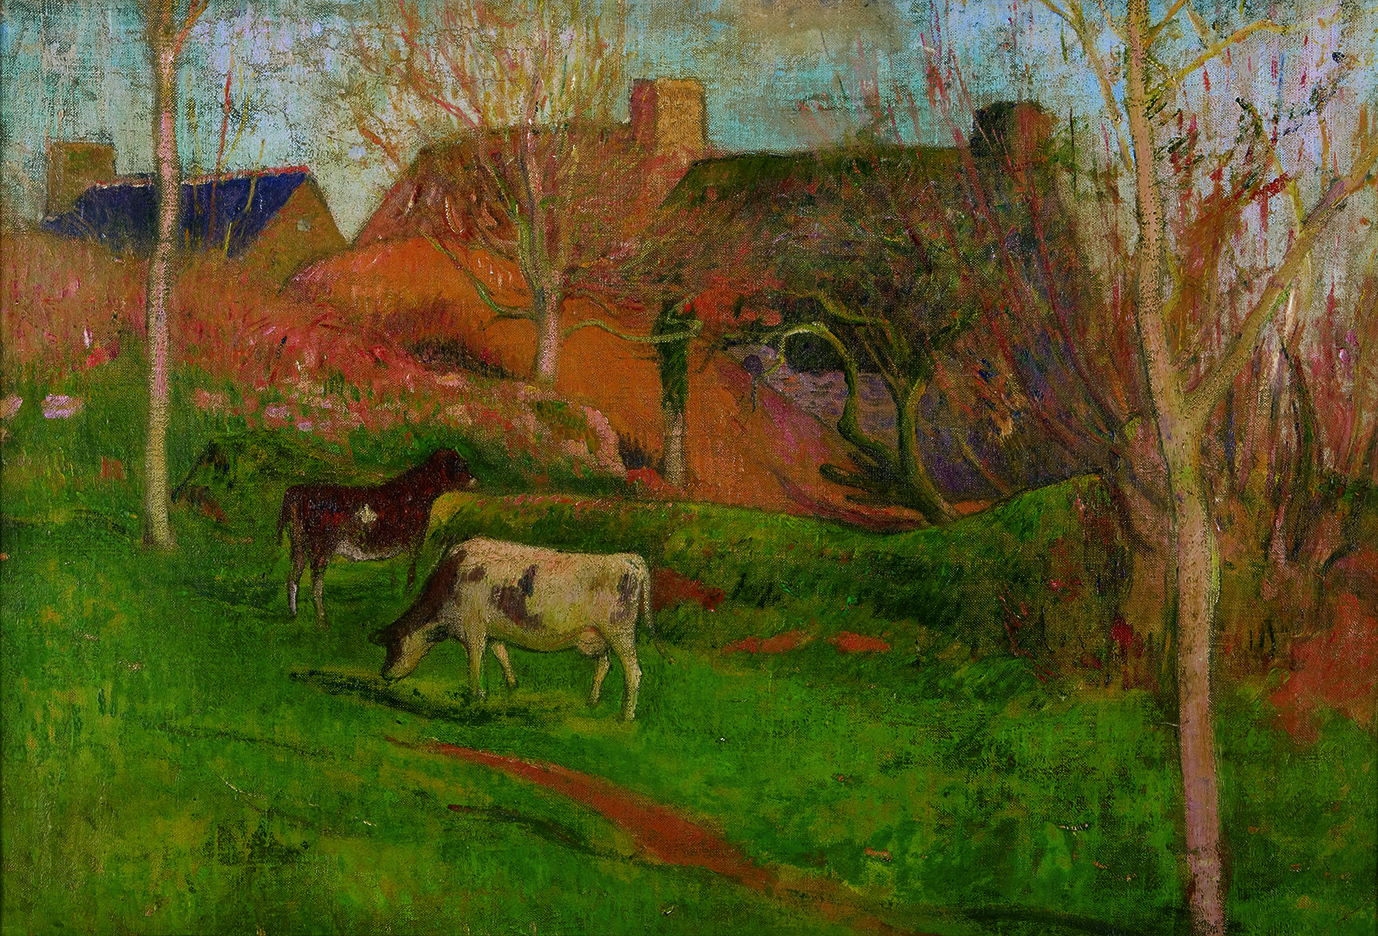 アンリ・モレ《ポン=タヴァンの風景》 1888-89年 カンペール美術館 Collection du musee des beaux-arts de Quimper, France